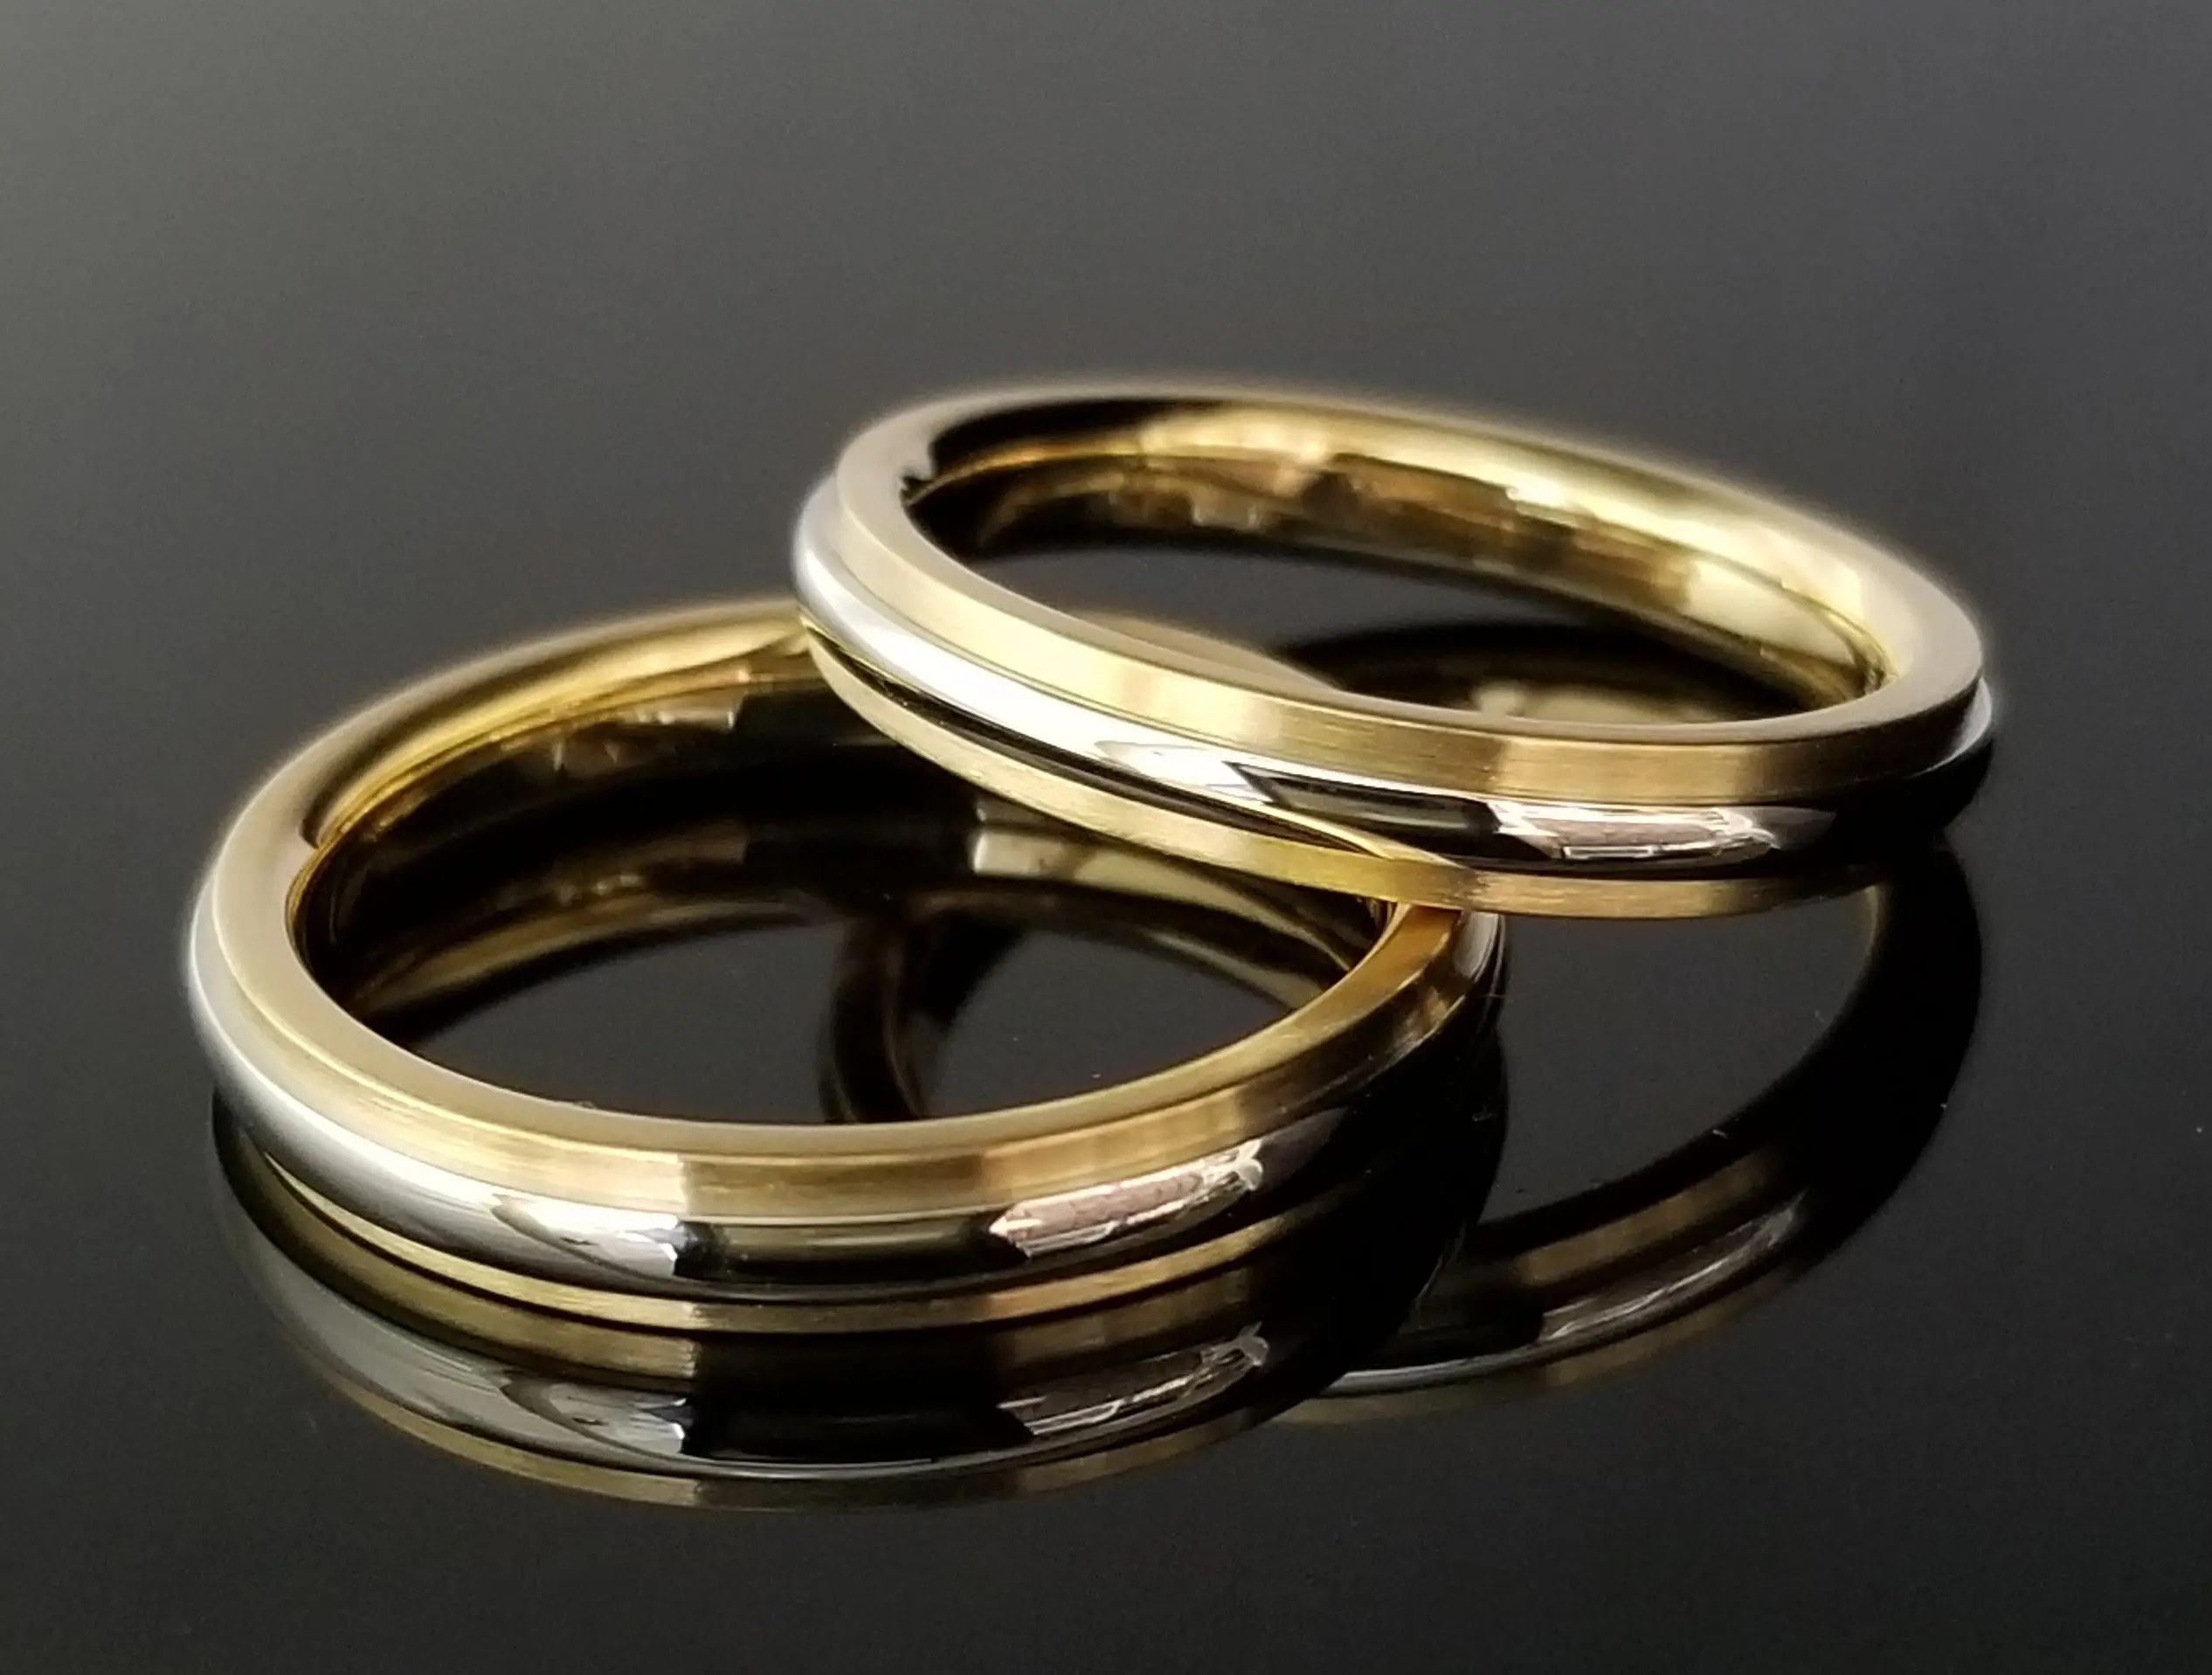 イエローゴールドが際立つコンビデザイン | 結婚・婚約指輪のオーダー ...